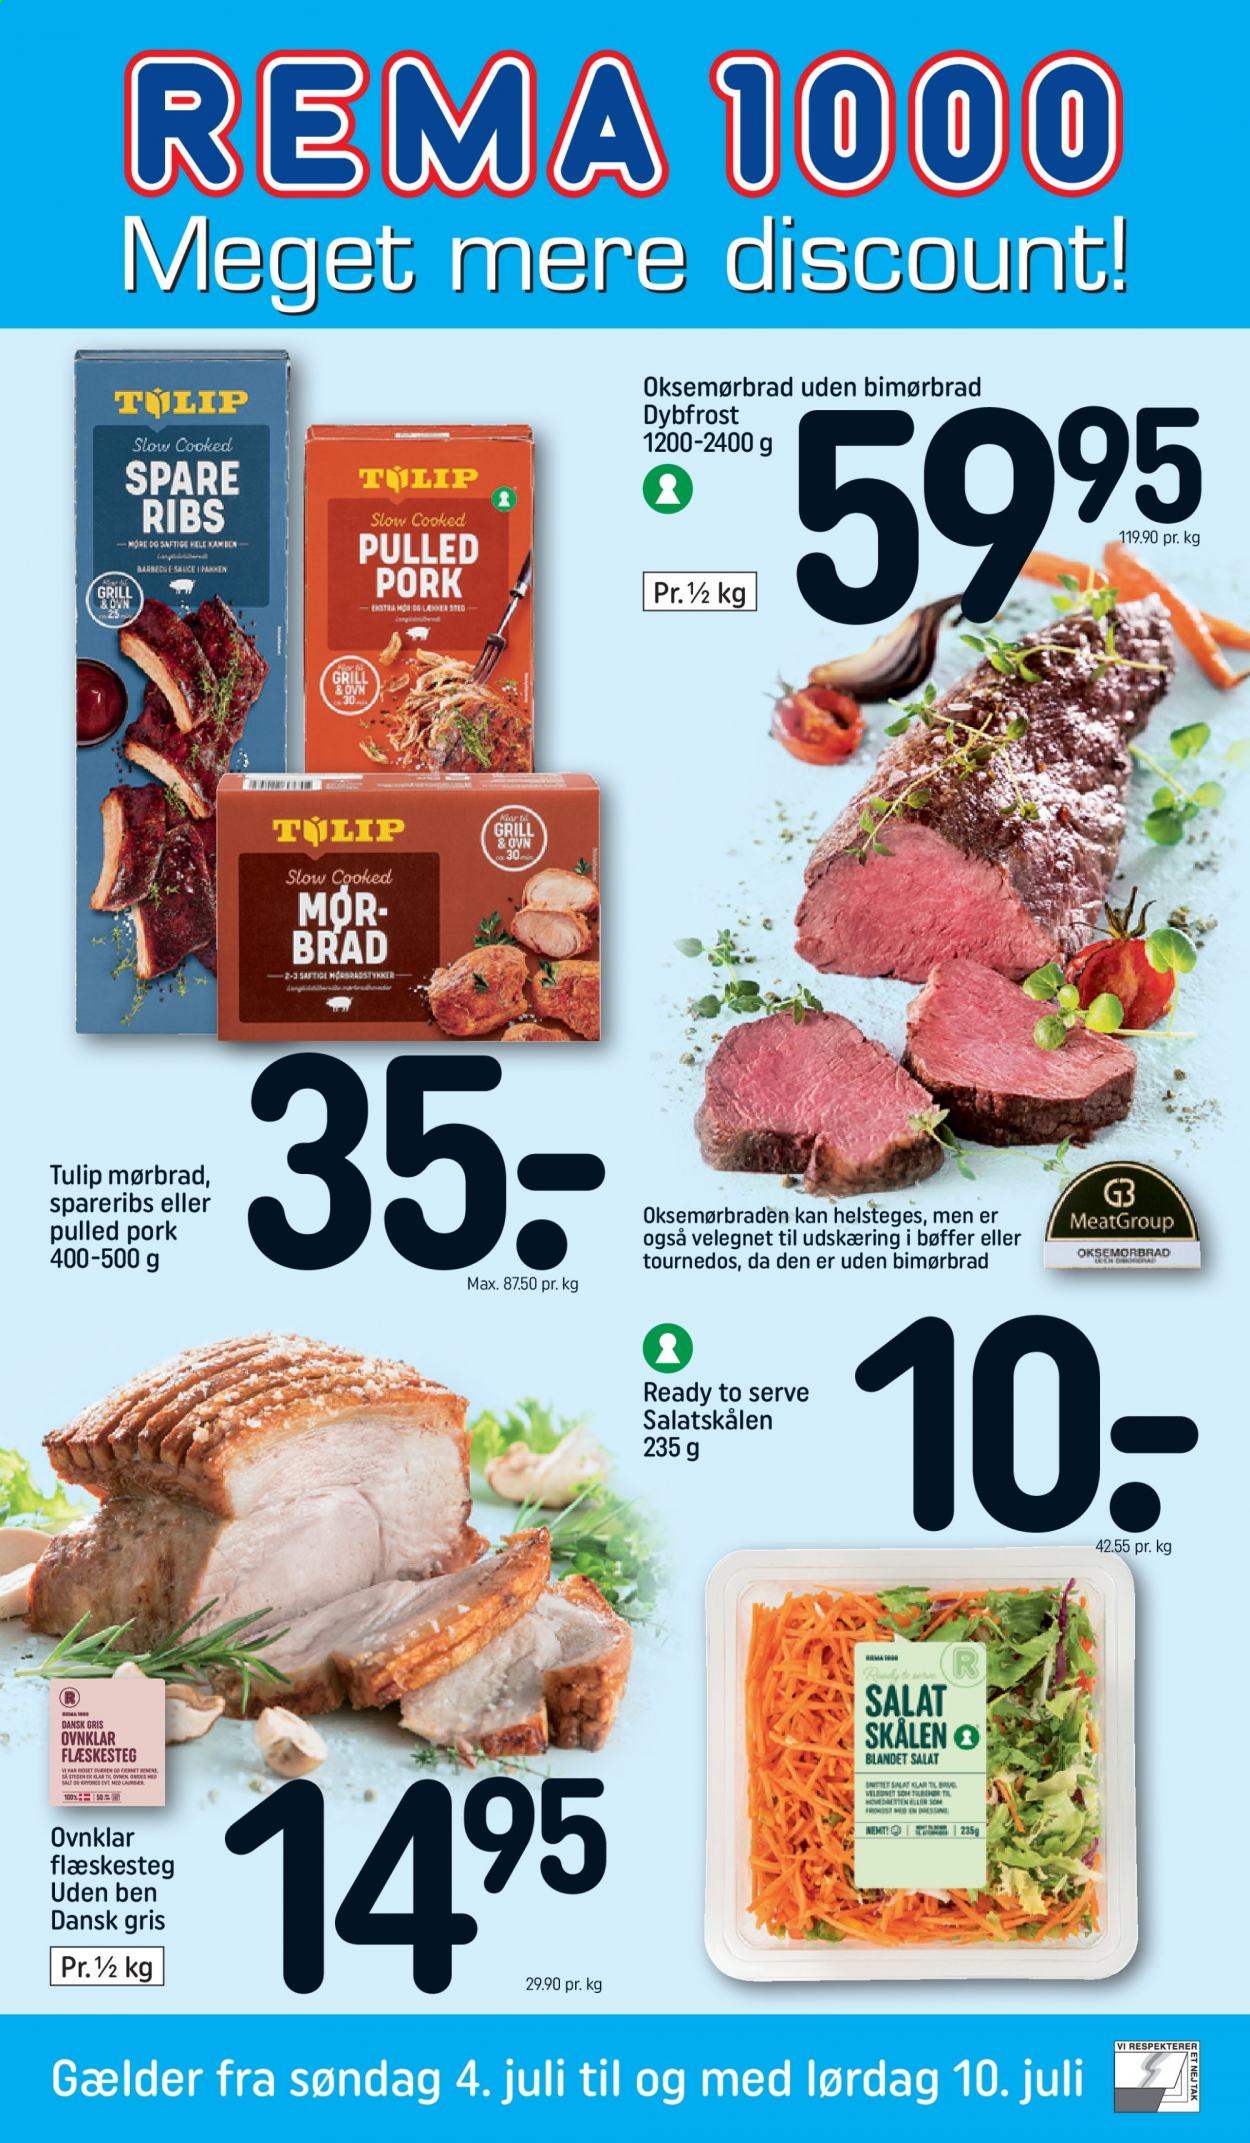 thumbnail - Rema 1000 tilbud  - 4.7.2021 - 10.7.2021 - tilbudsprodukter - mørbrad, oksemørbrad, ribs, spareribs, flæskesteg, pulled pork, salat. Side 1.